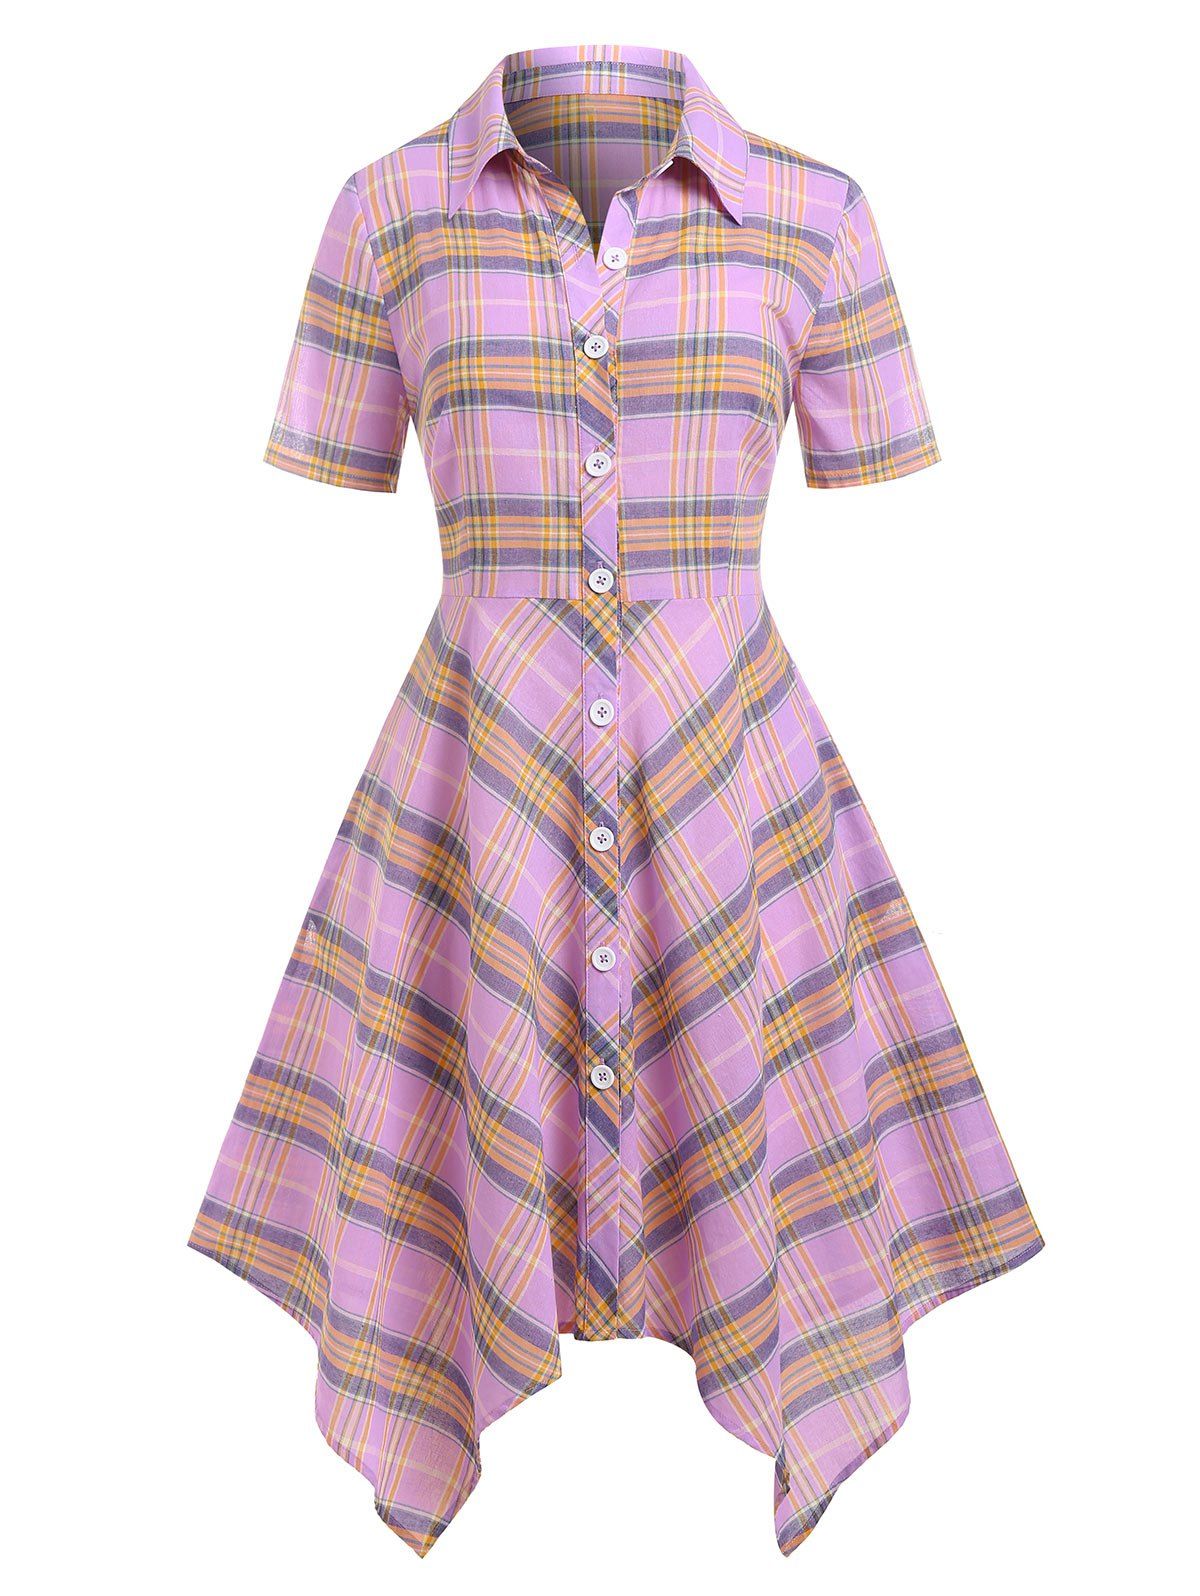 Robe Chemise Mouchoir à Carreaux Boutonnée Grande Taille - Violet clair L